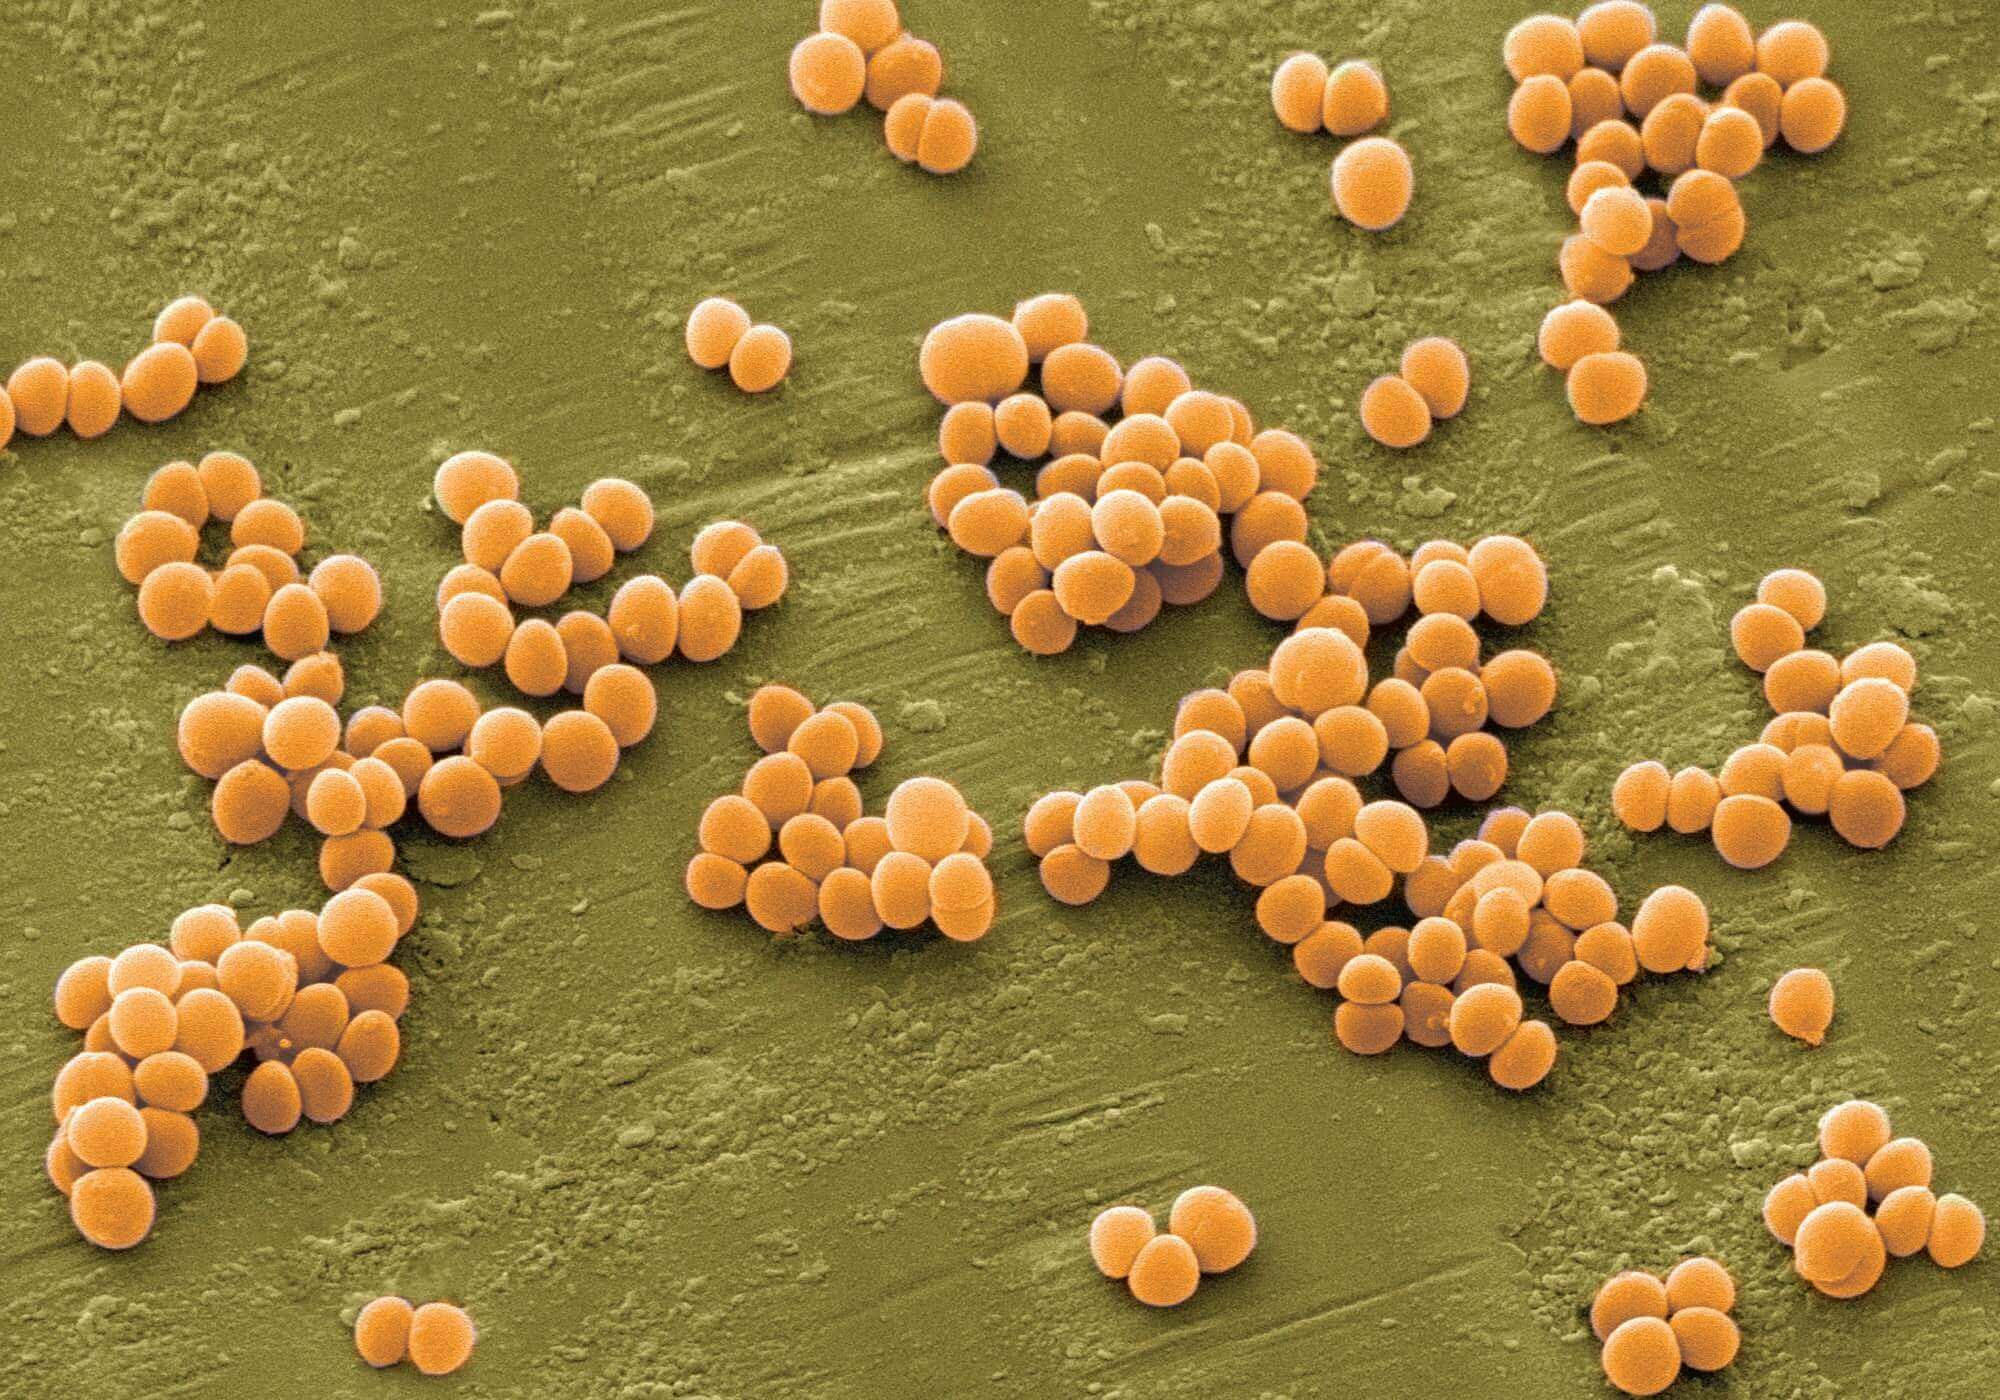 Золотистый стафилококк – новое лекарство для борьбы с супербактериями